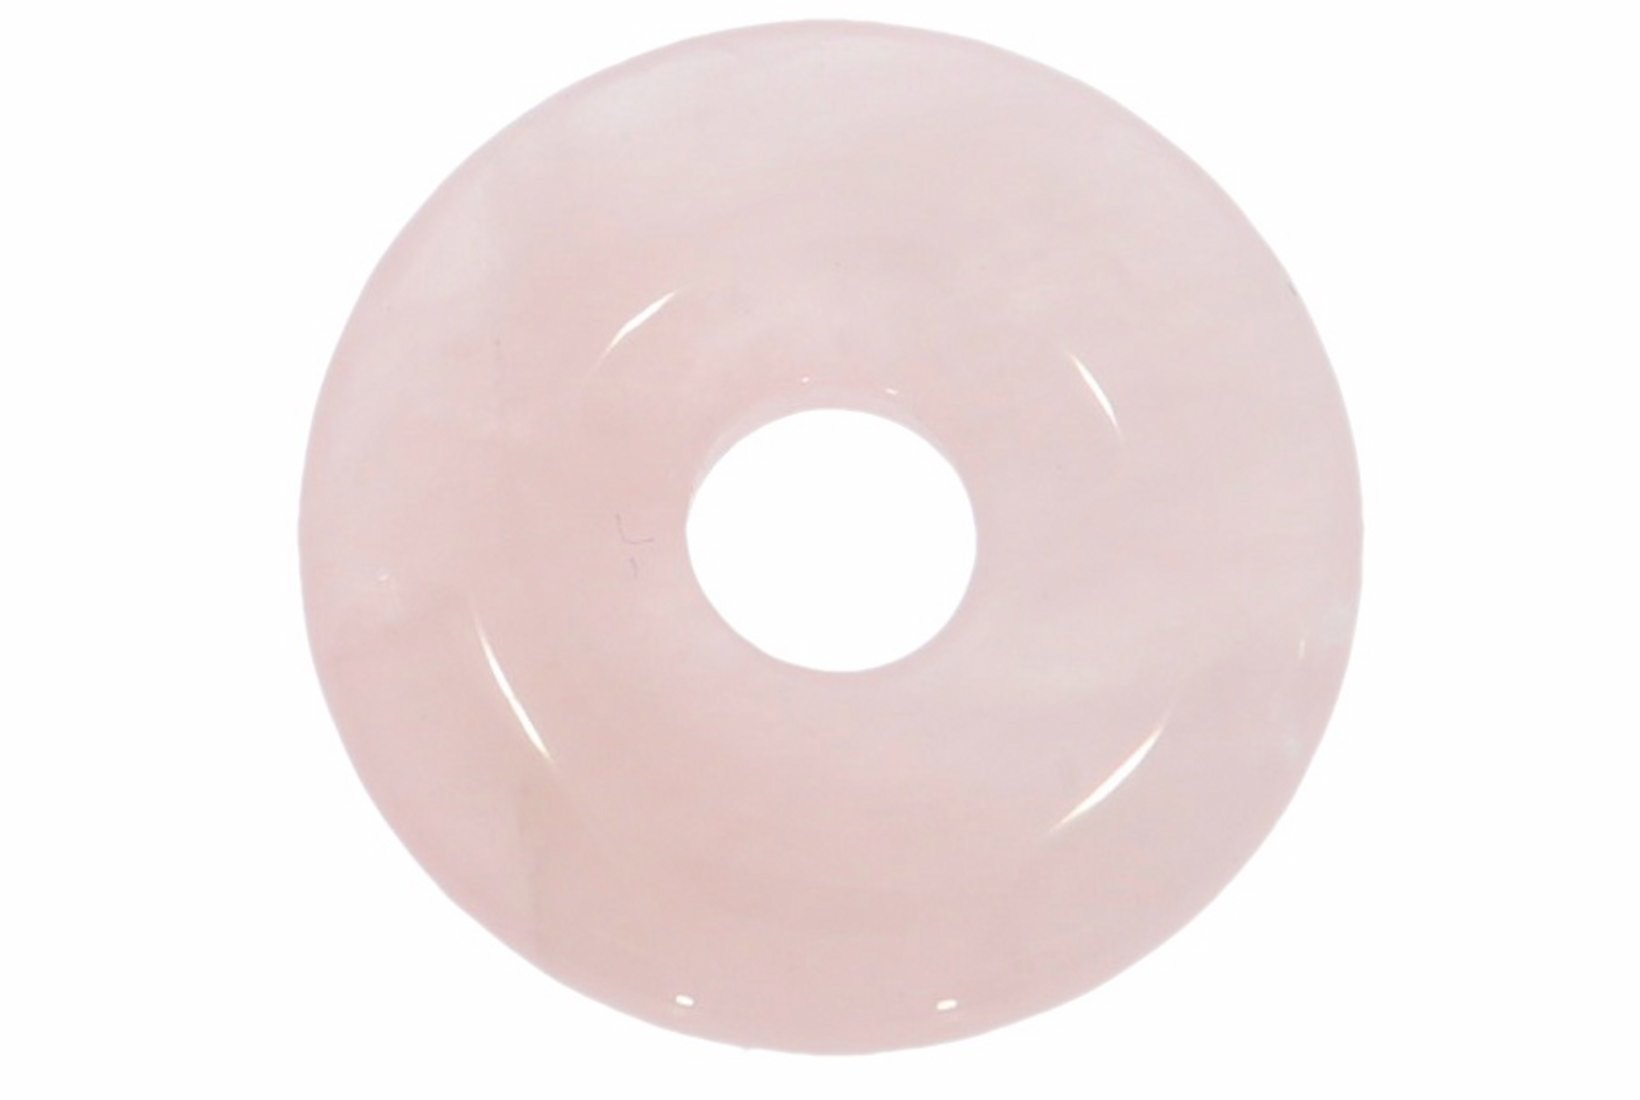 Rosenquarz Donut Schmuck Anhänger 20mm für's Lederband HS1587